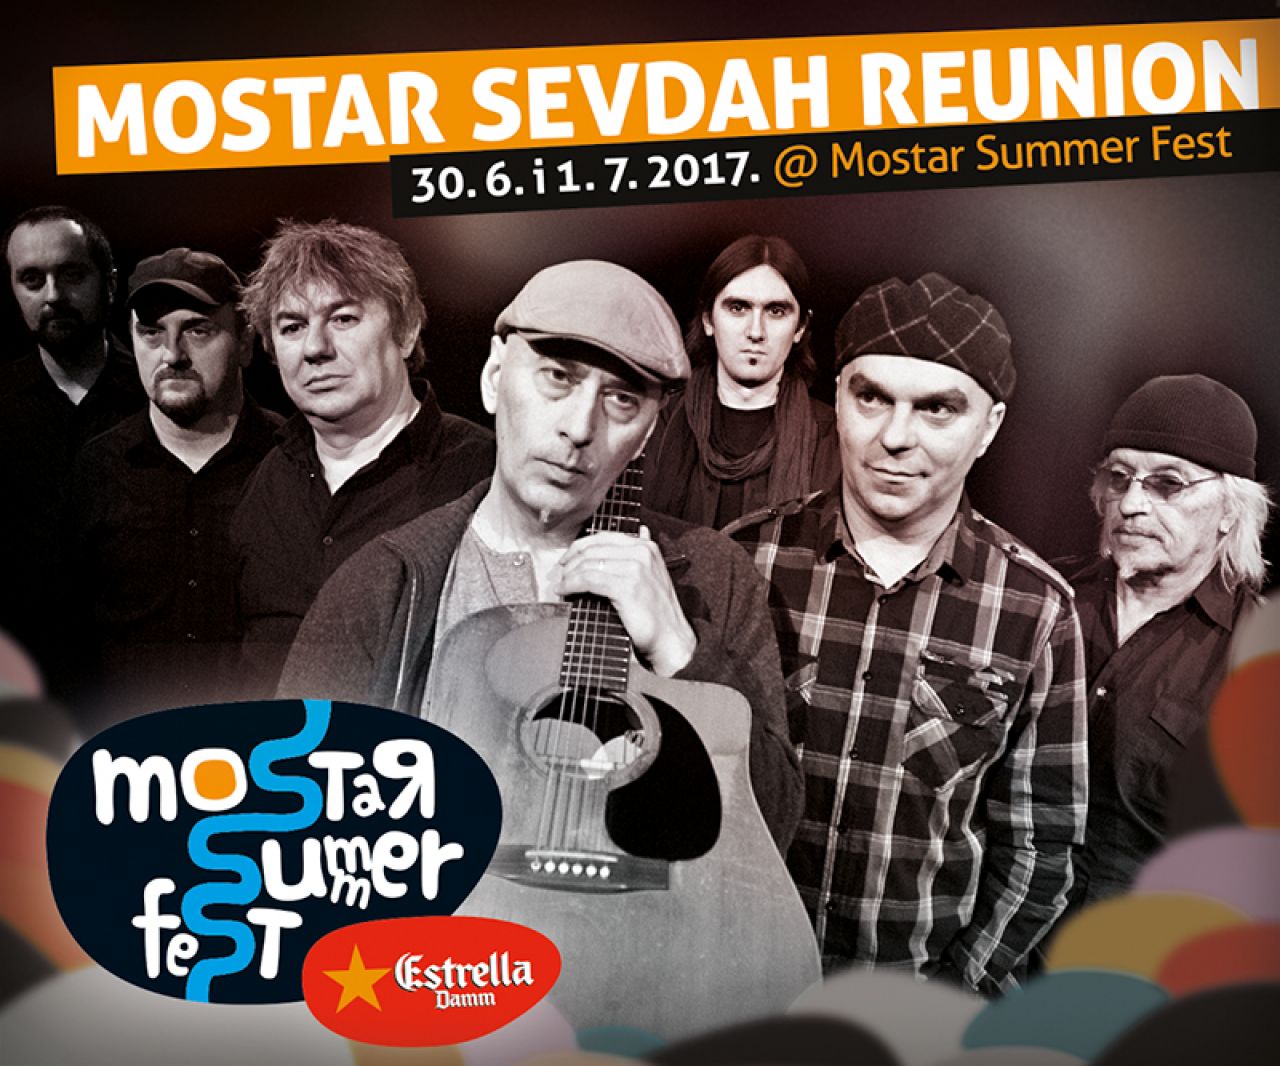 Mostar Sevdah Reunion nastupa na ovogodišnjem Mostar Summer Festu!